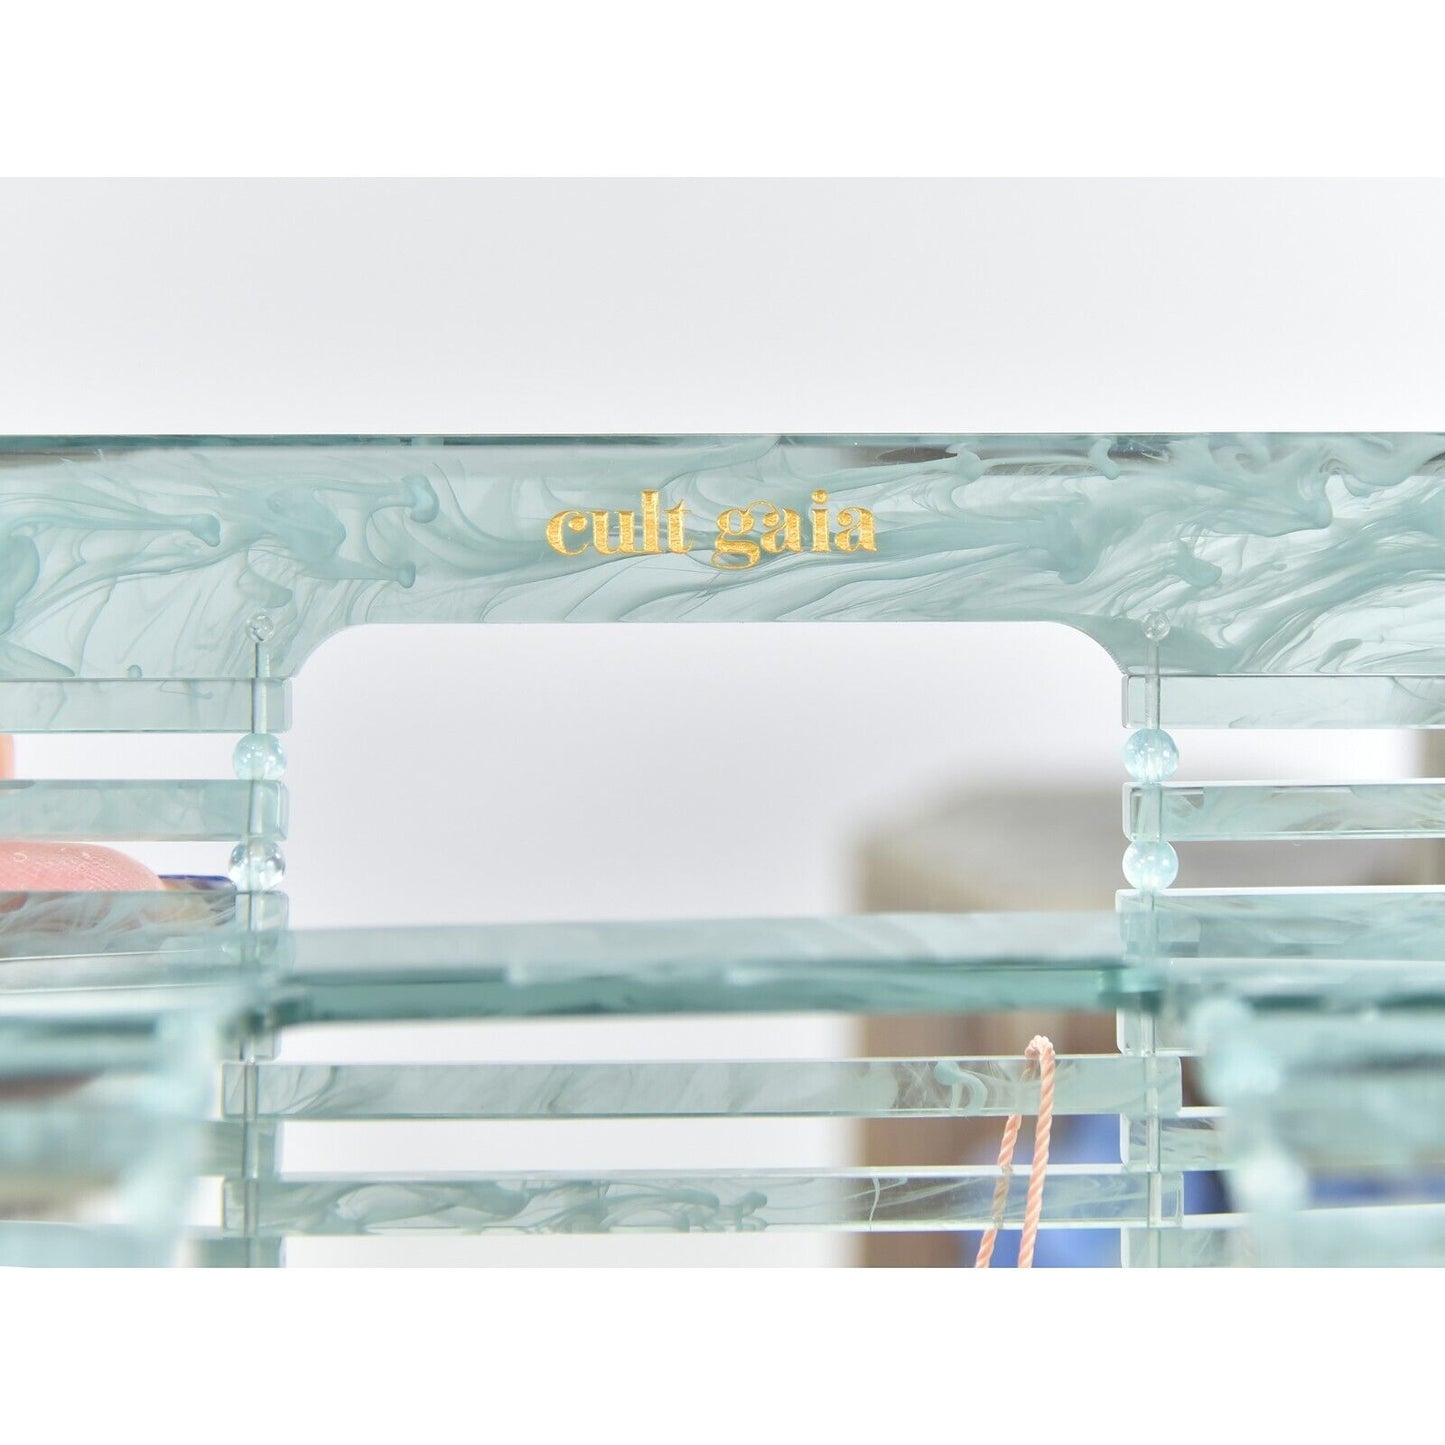 Cult Gaia Seaspray Blue Marble Acrylic Mini Ark Top Handle Bag NWT